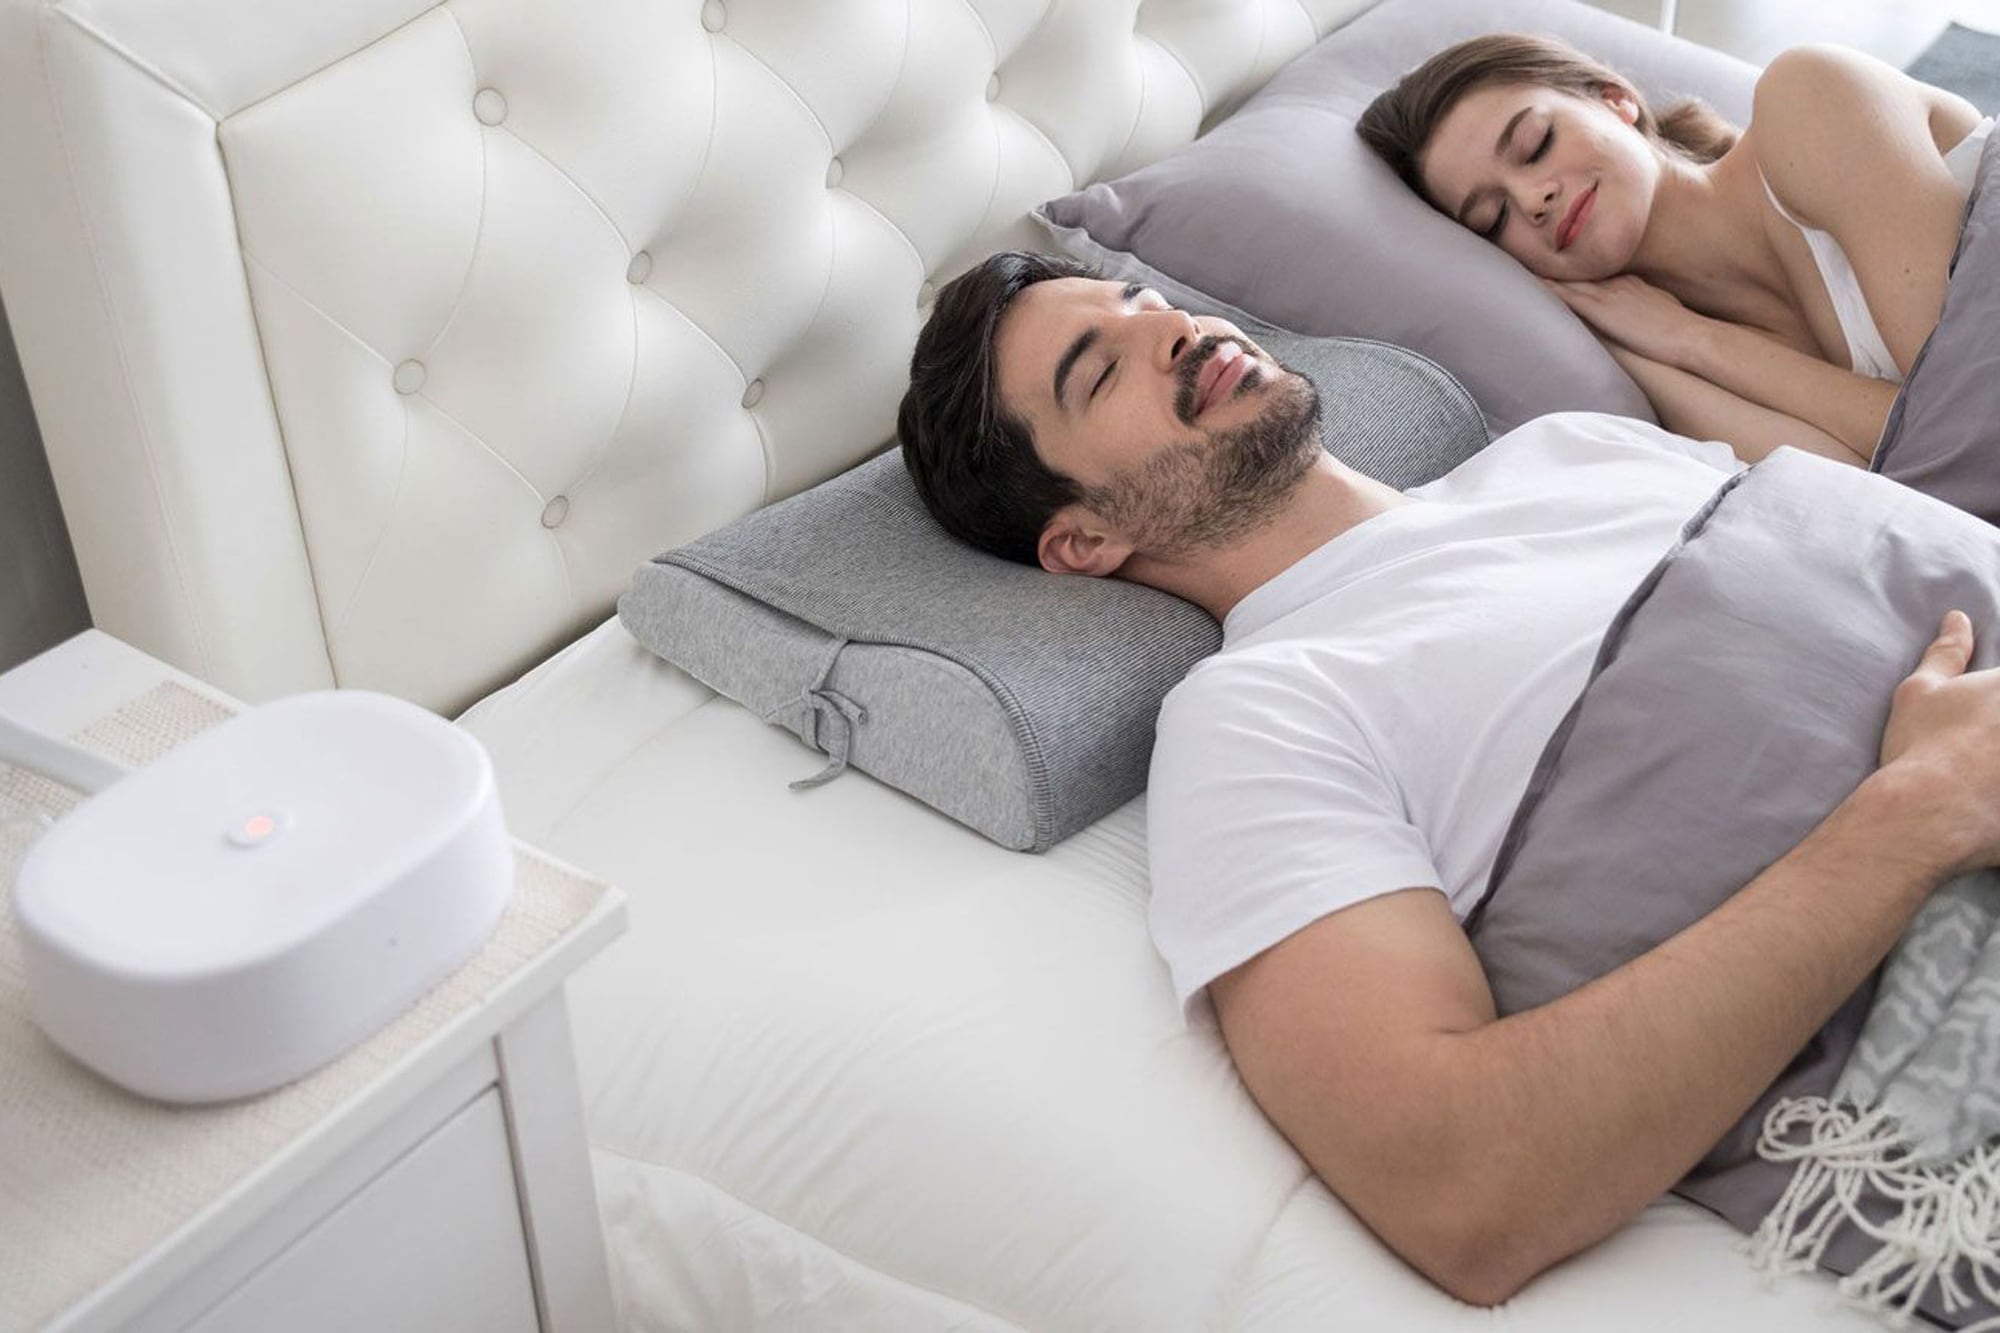 La empresa 10minds presentó su almohada Motion Pillow pensada para prevenir los ronquidos